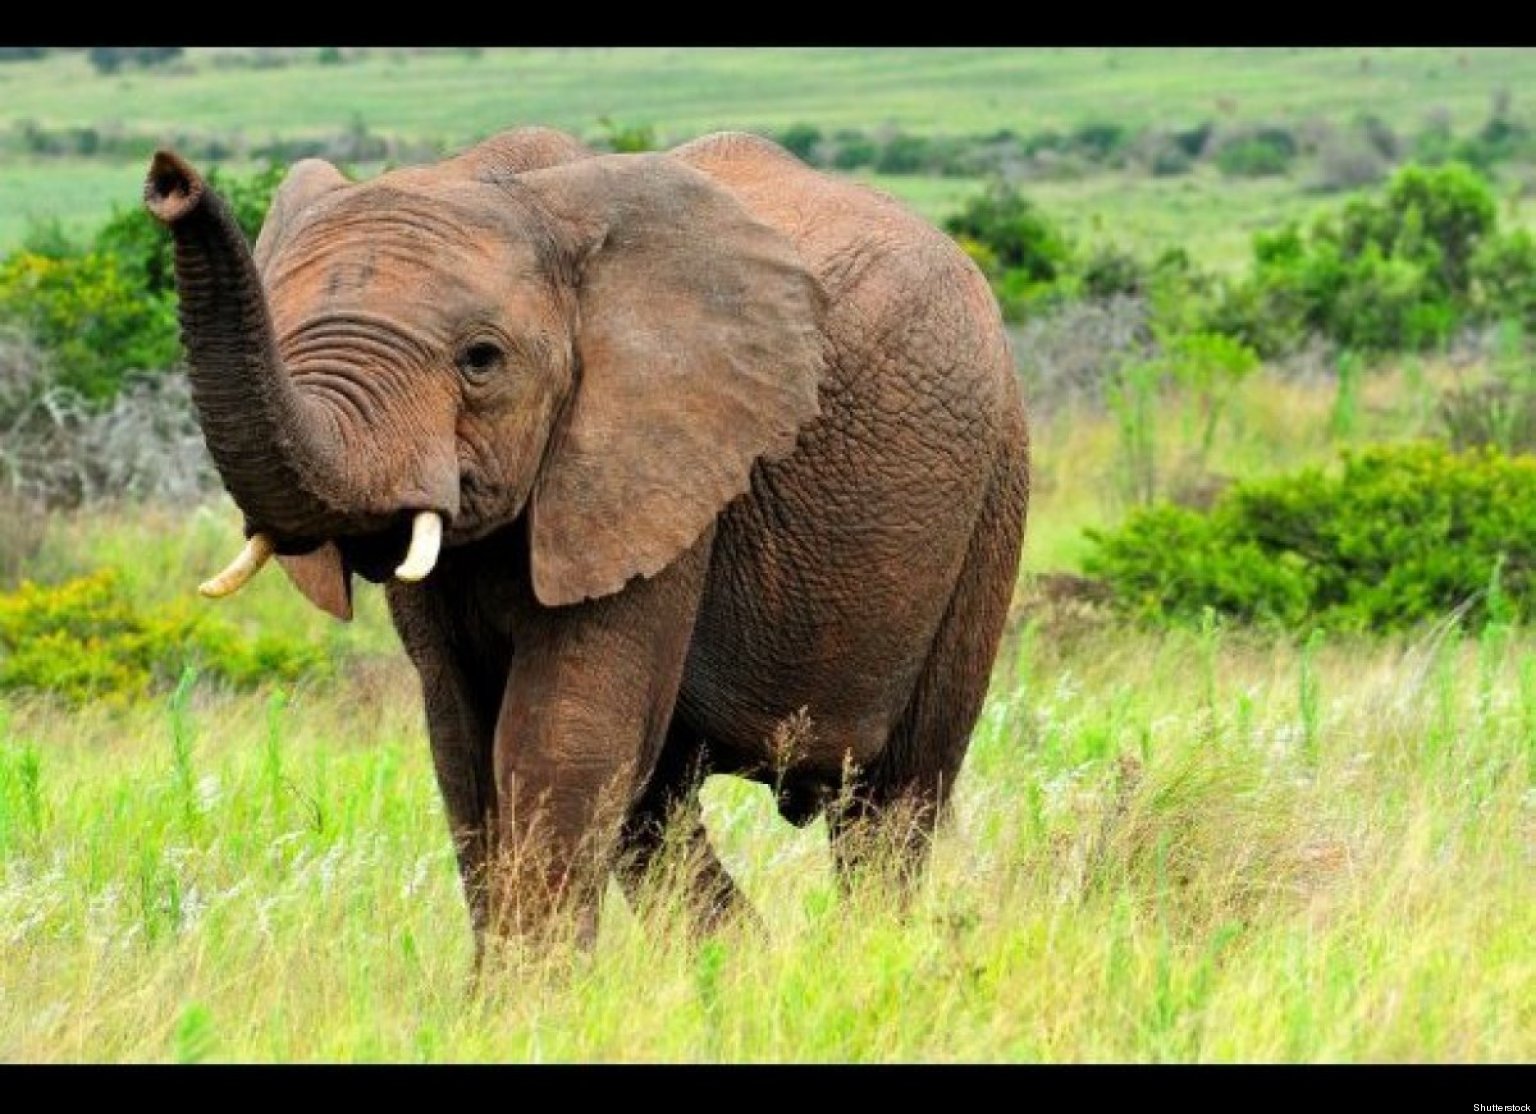 Animals in danger at present. Животные pictures. Энималс животные. Слон на рассвете. Животные Австралии похожи на слона.